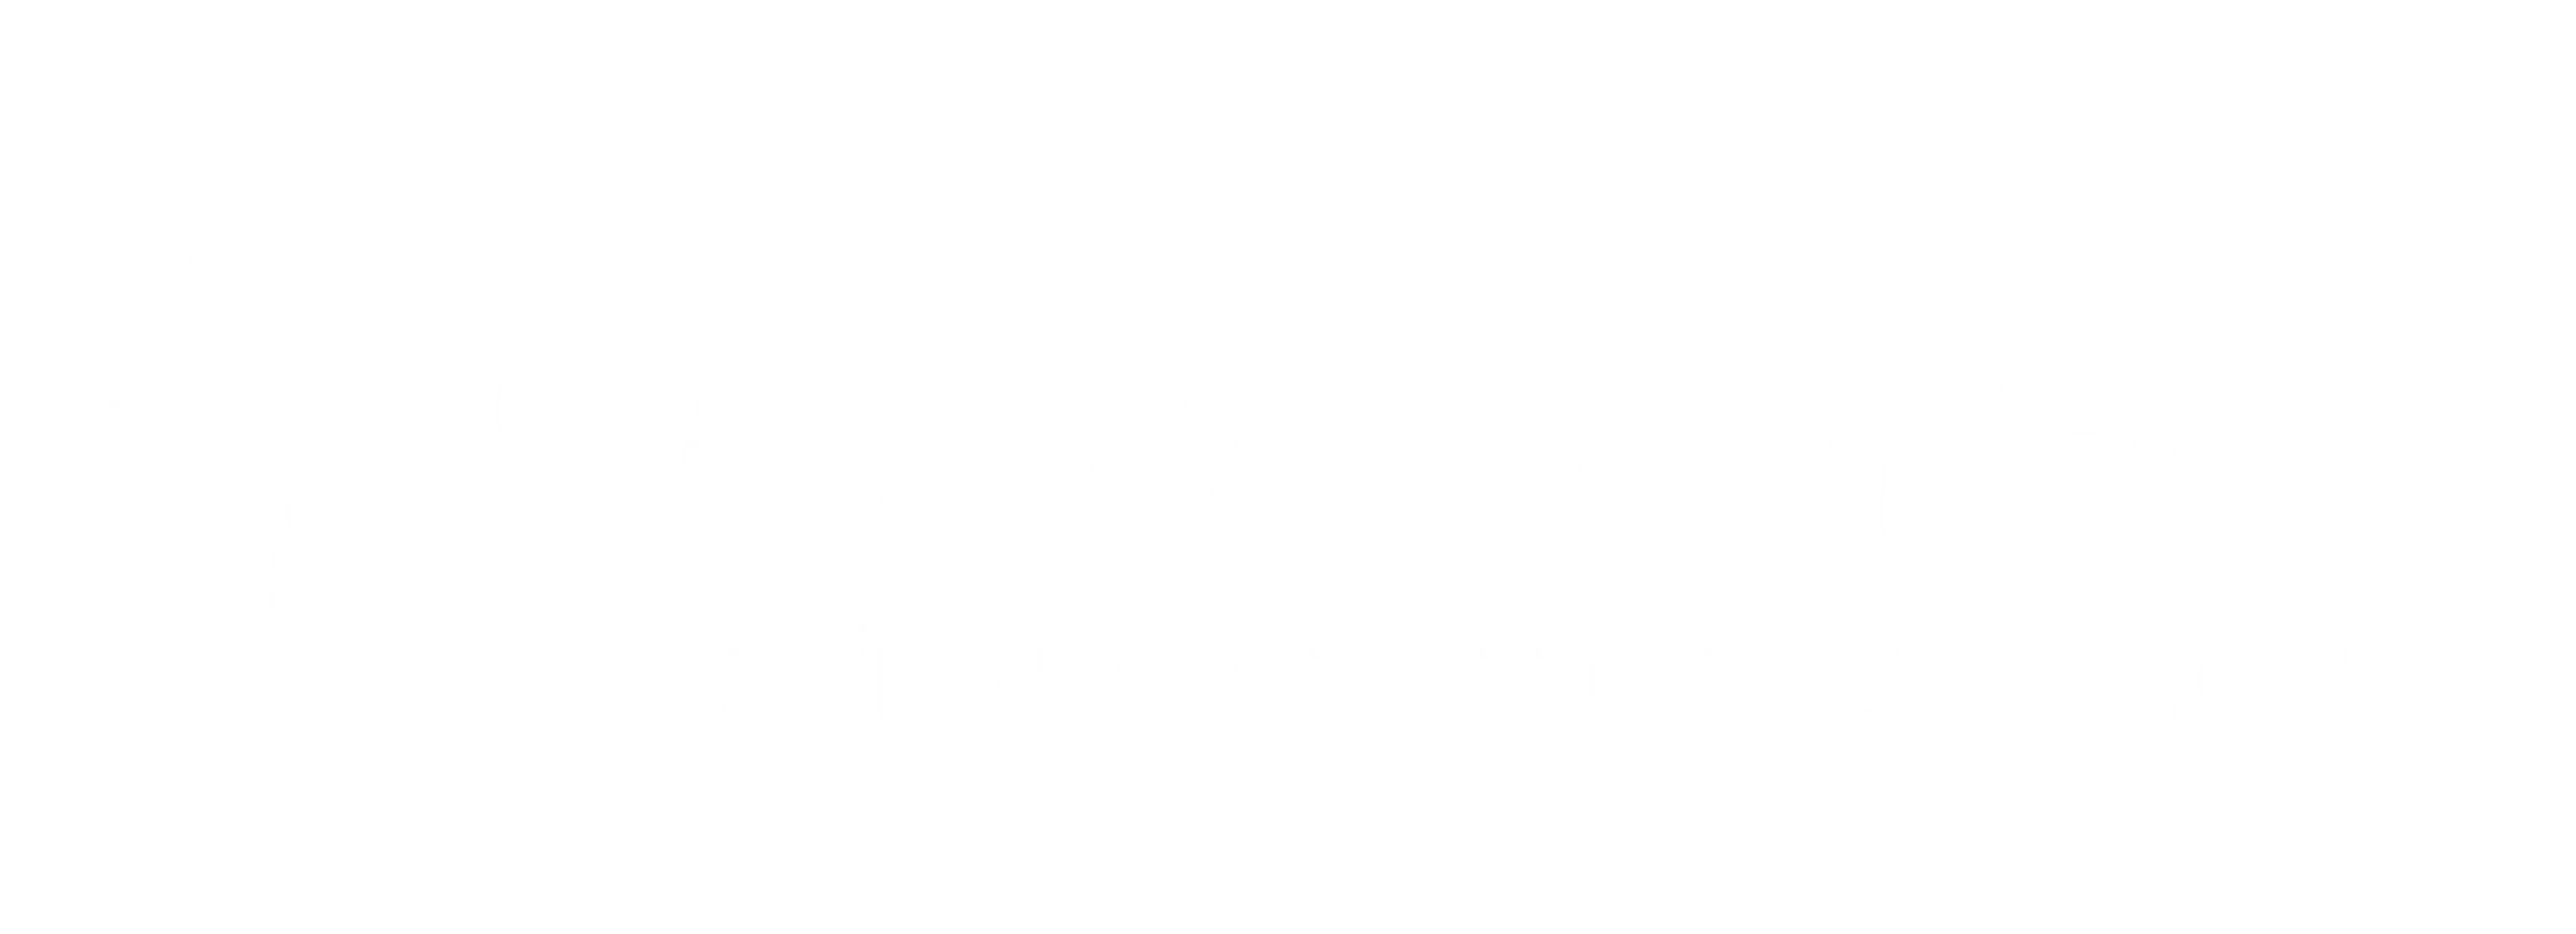 Saint Petersburg Women logo white version